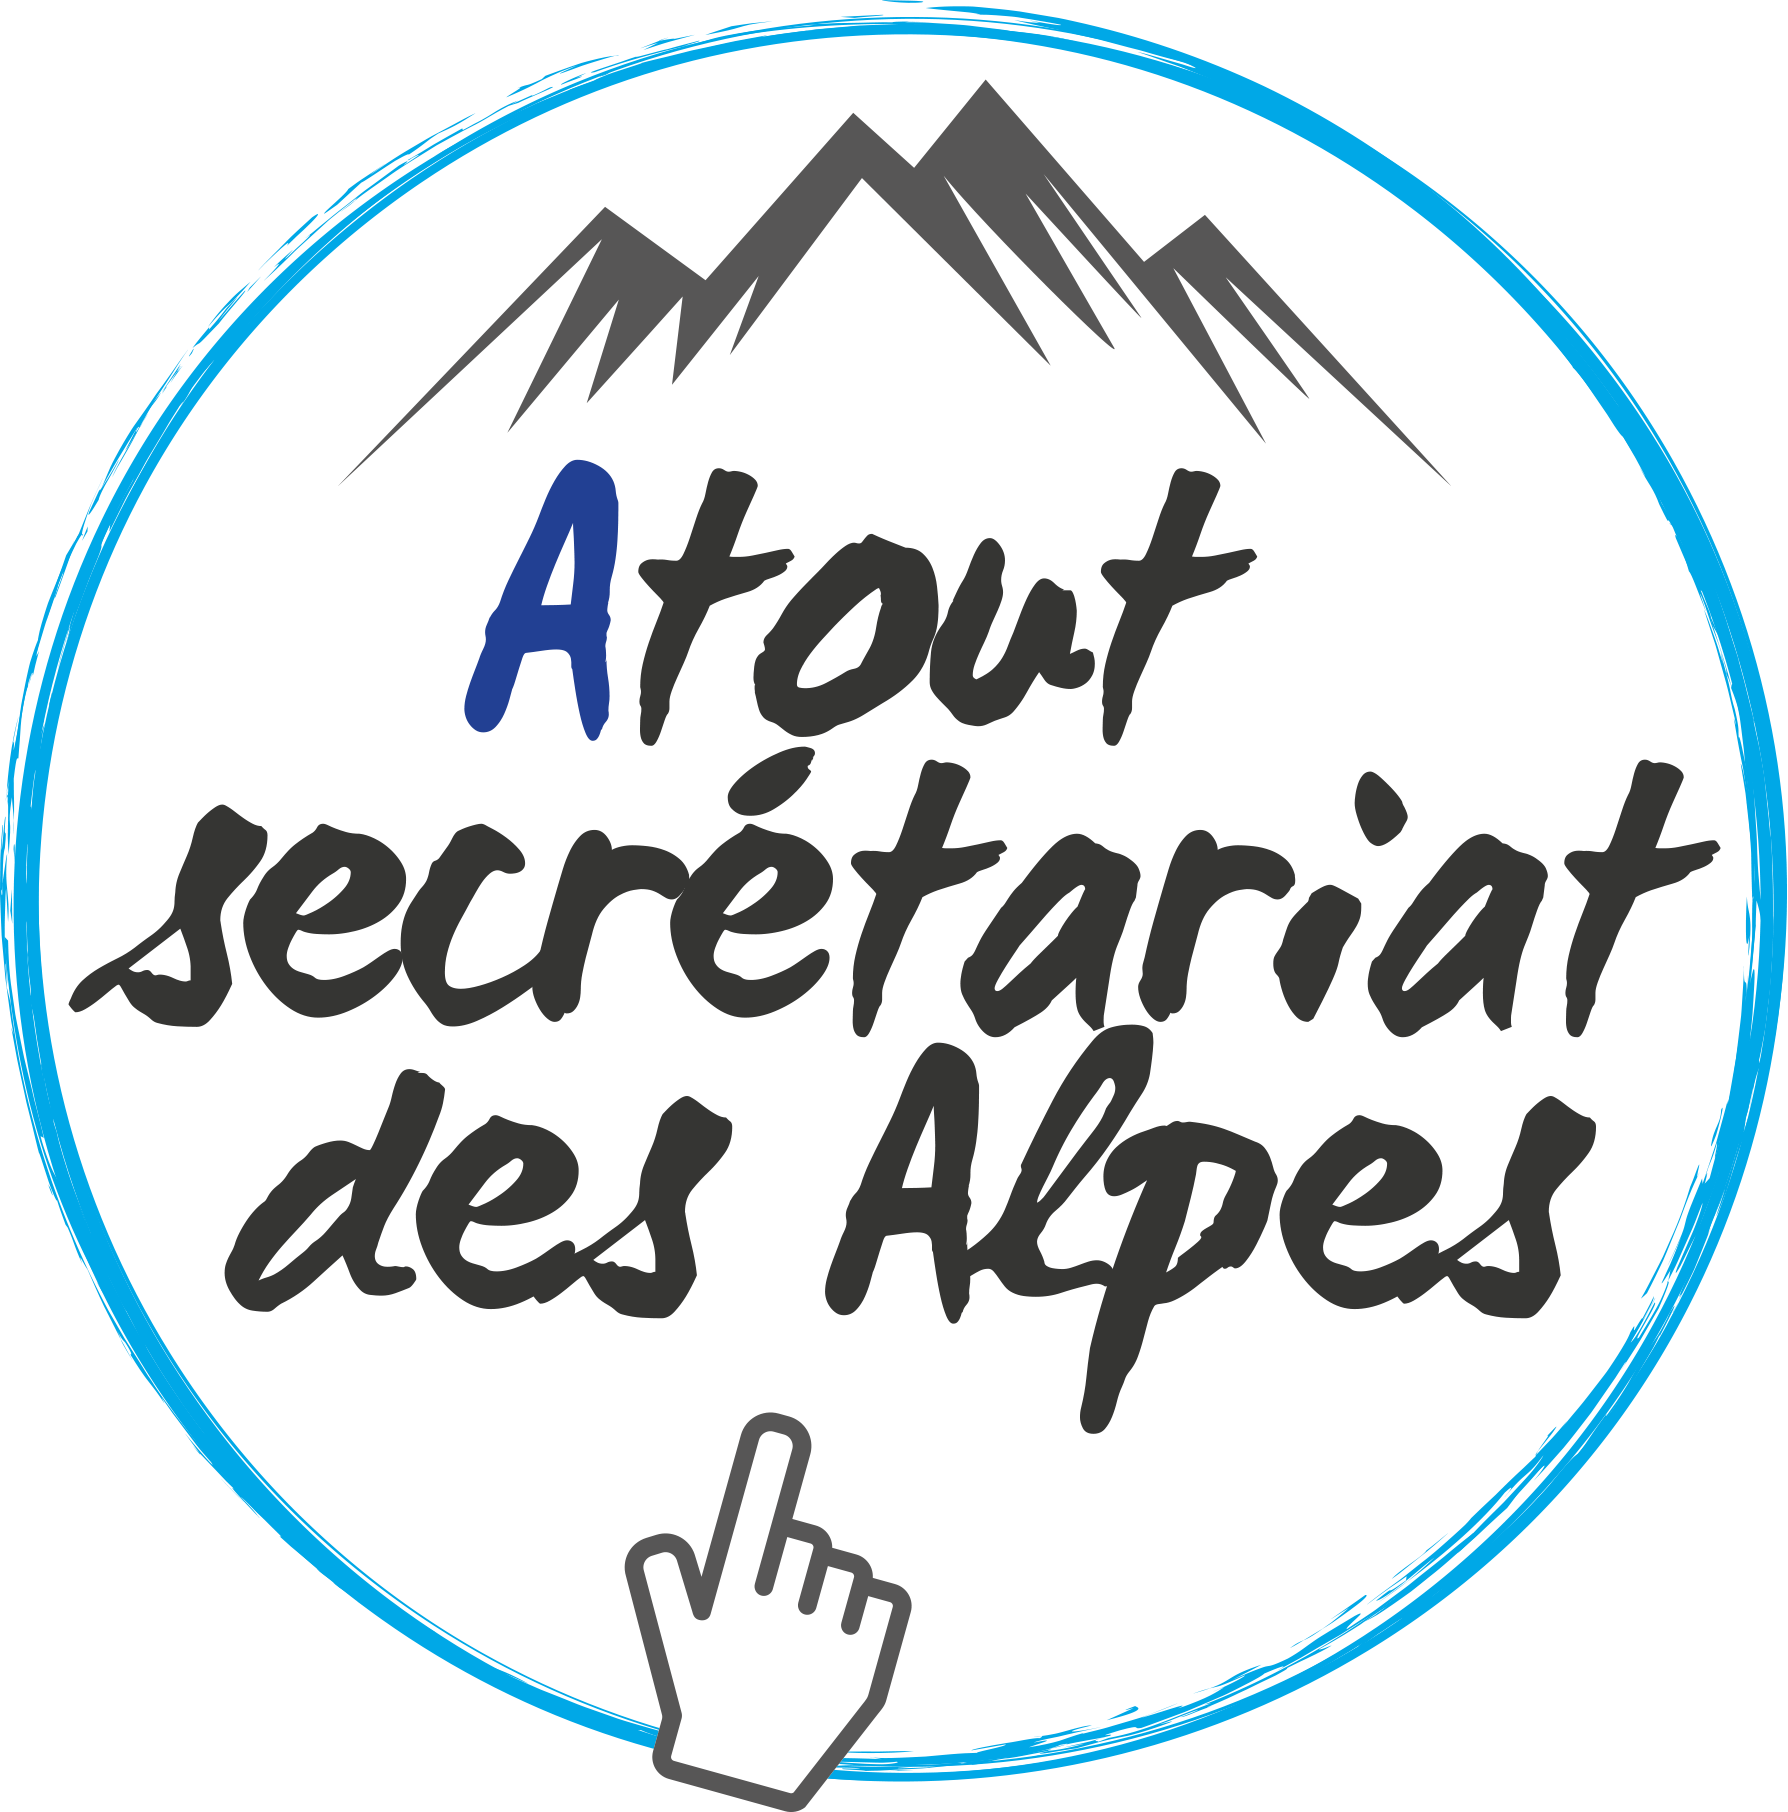 Atout secrétariat des Alpes